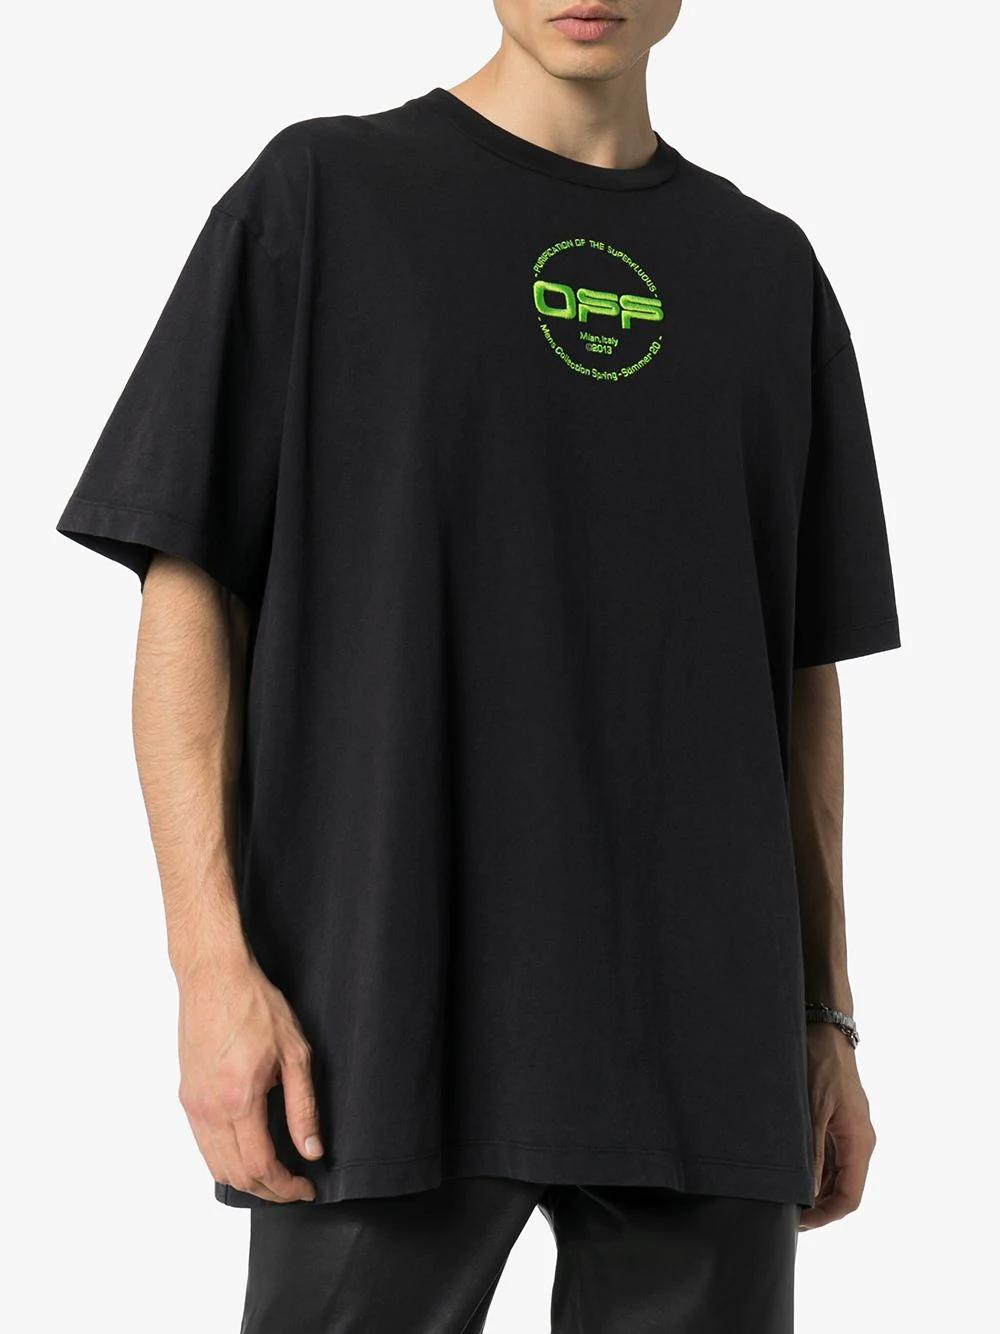 Off-White c/o Virgil Abloh Hand Logo T Shirt in Black for Men - Lyst